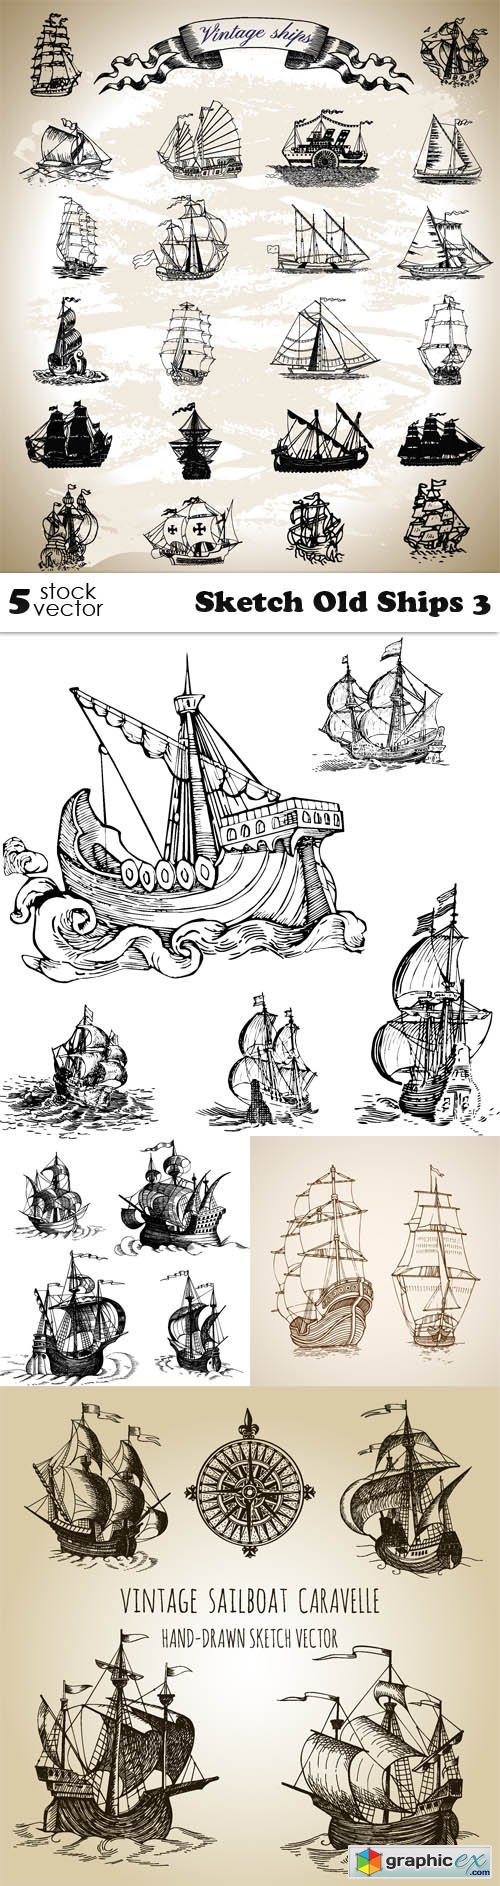 Sketch Old Ships 3